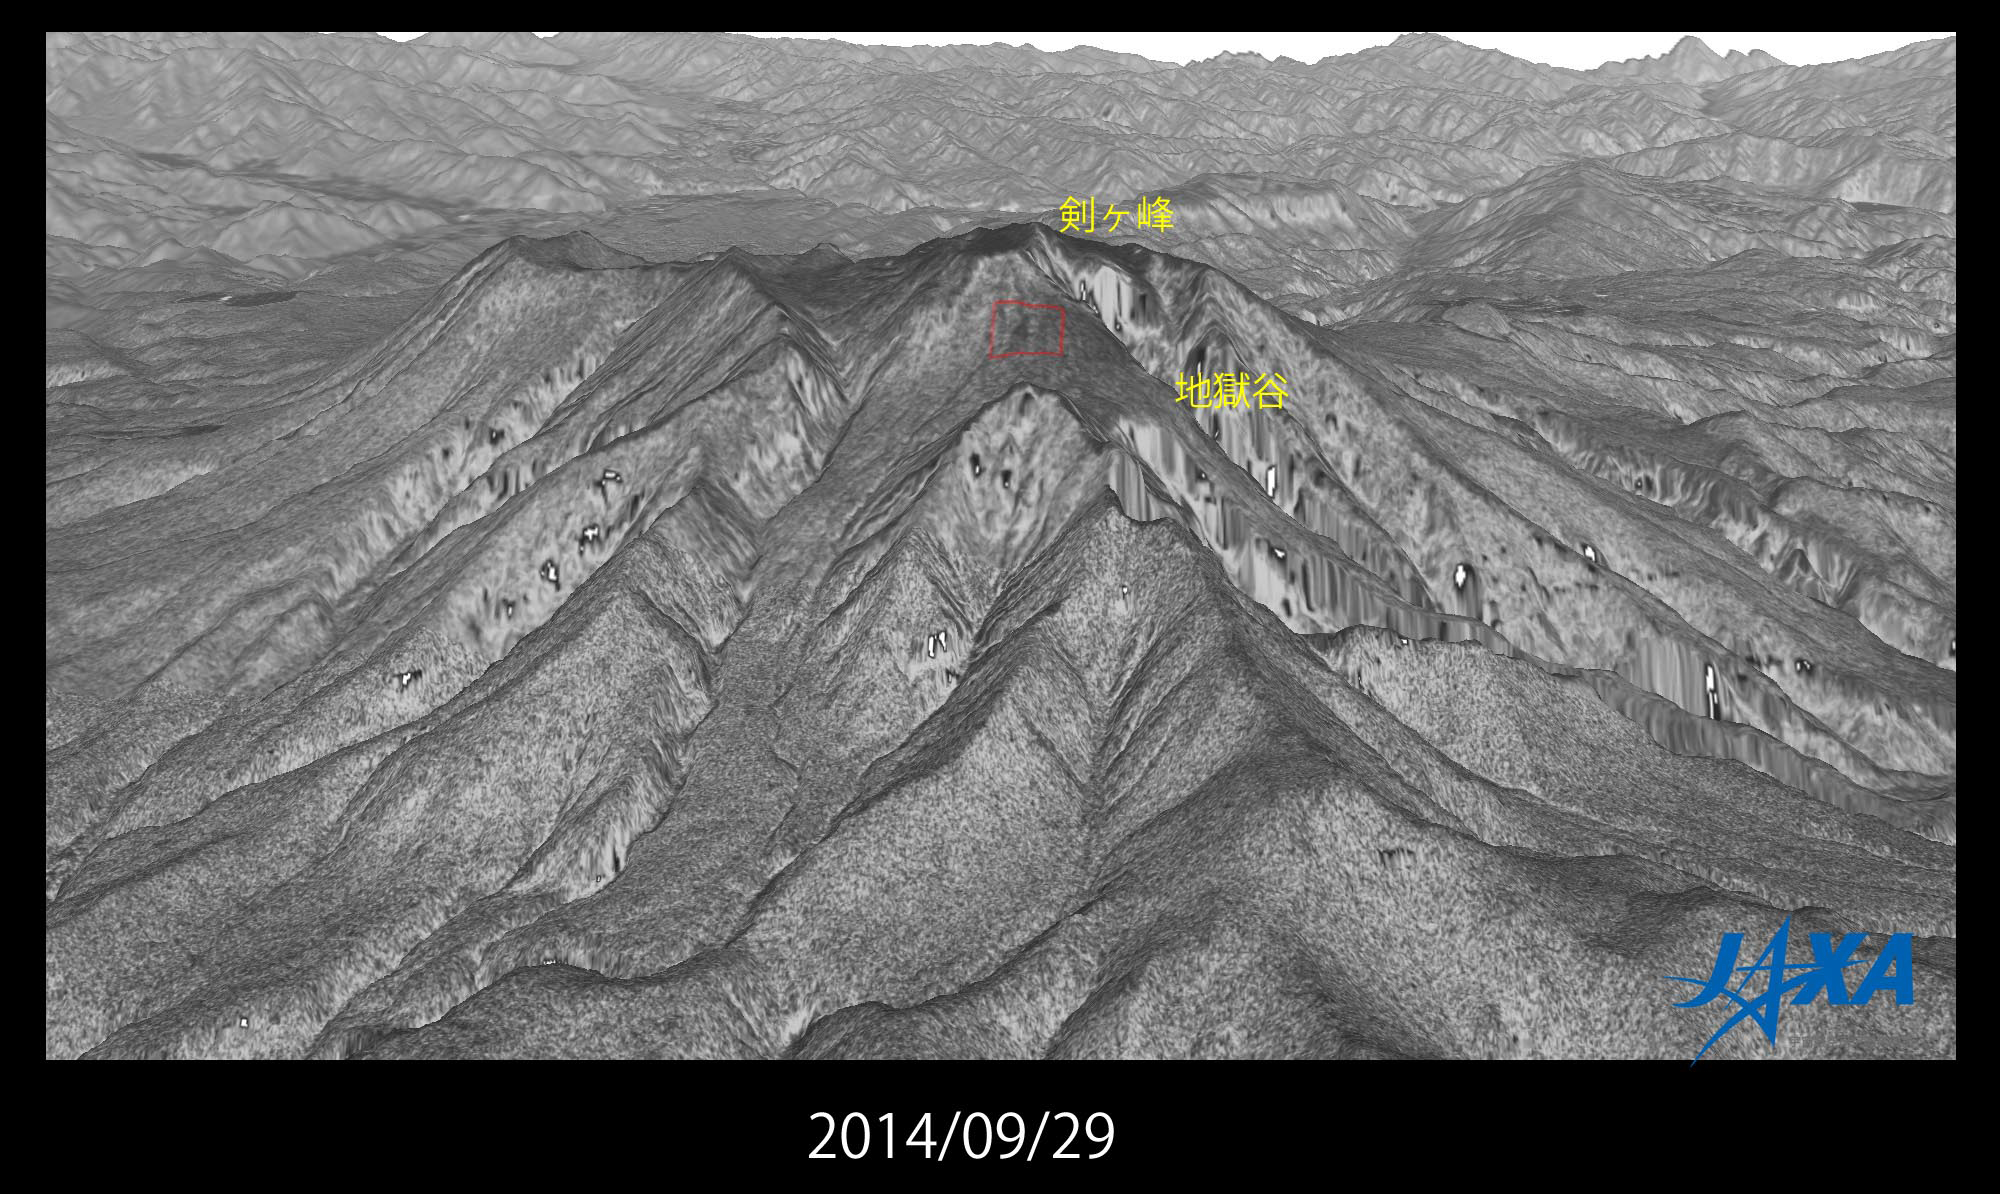 図4: 御嶽山山頂付近の噴火後 (2014年9月29日) の鳥瞰図